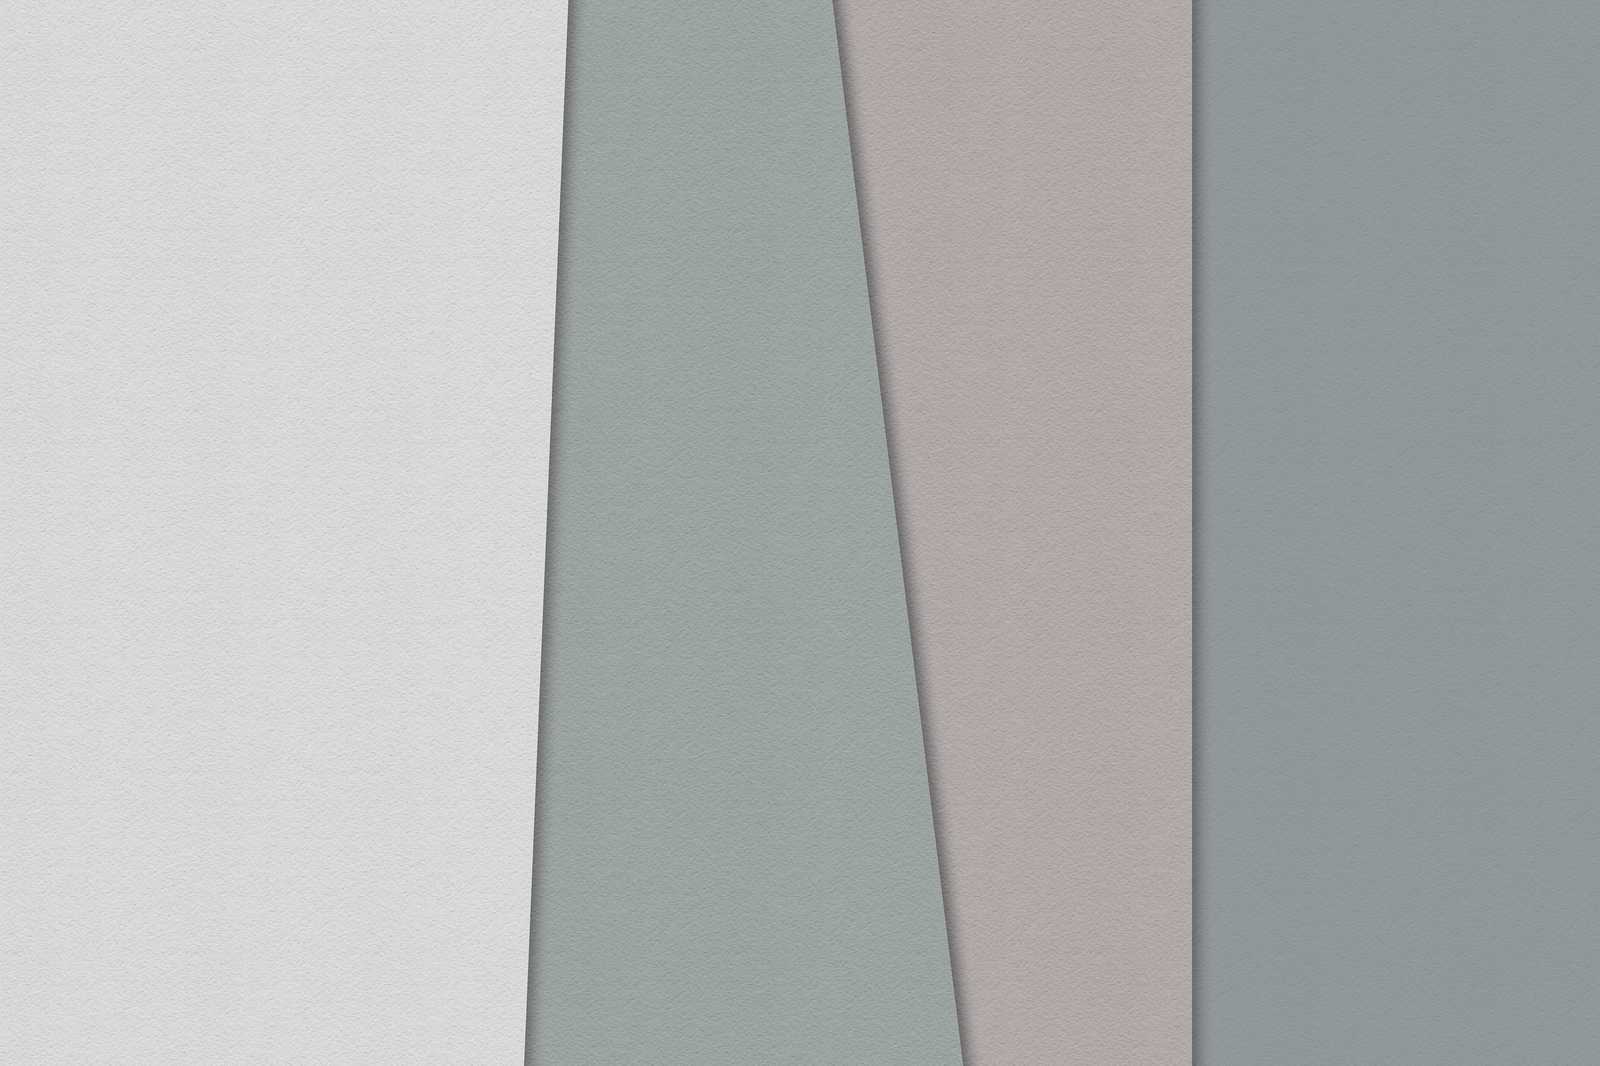             Layered paper 1 - Toile graphique avec aplats de couleurs en structure de papier à la cuve - 0,90 m x 0,60 m
        